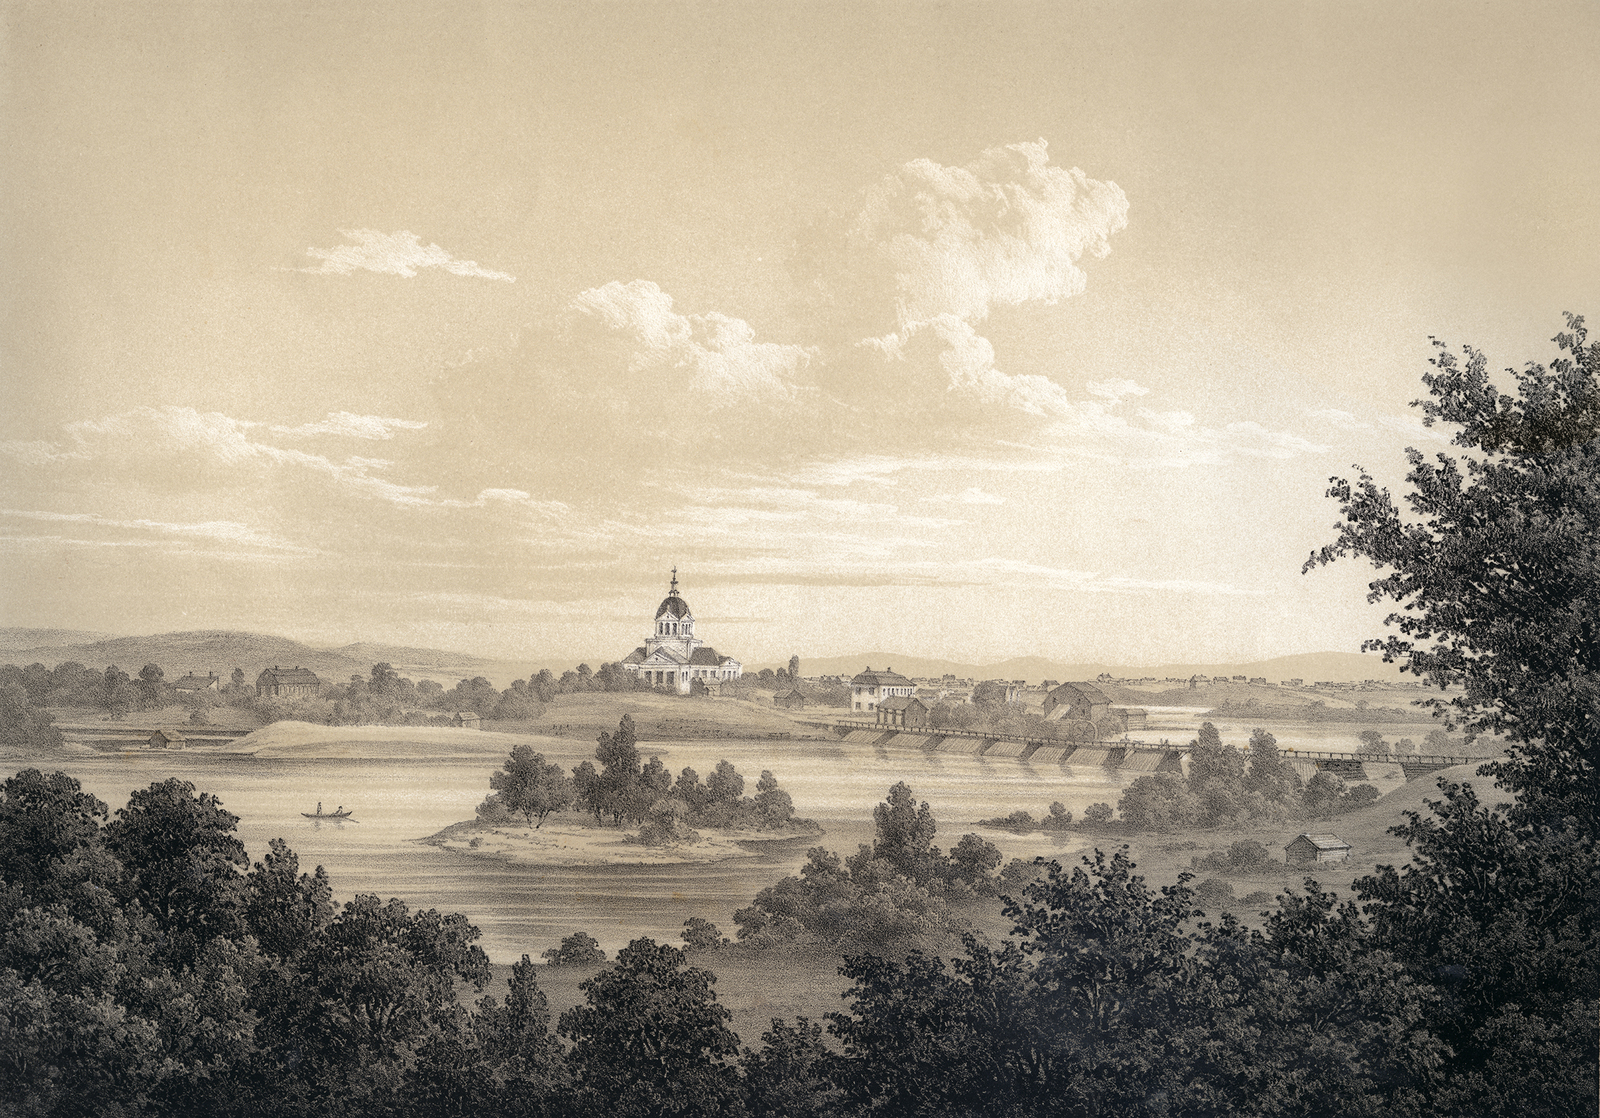  Litografi av landskyrkan med omnejd från 1856. 